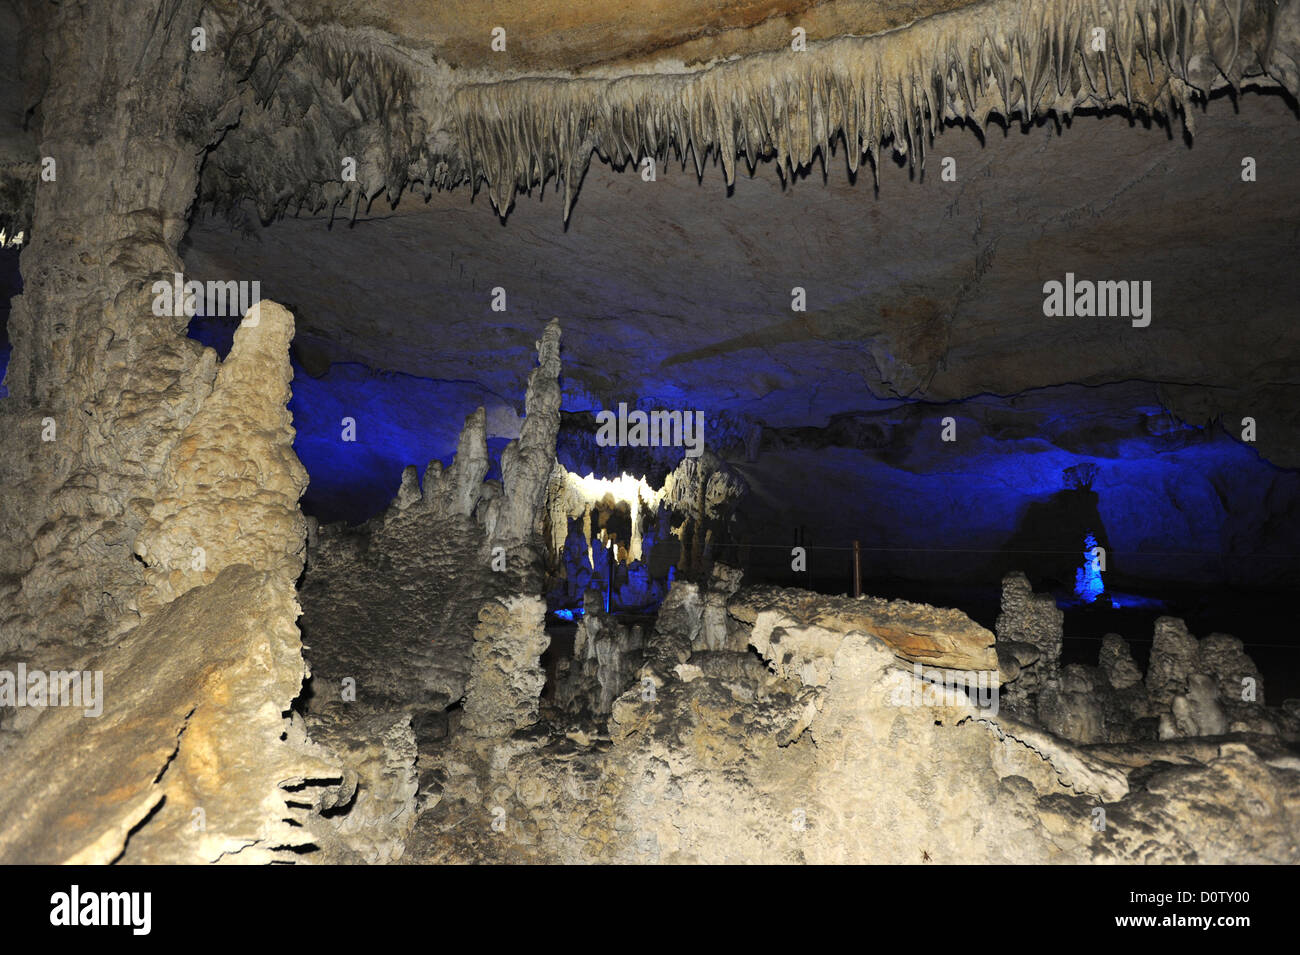 Laos, Asia, Than Kong Lo, cave, grotto, cliff, rock, stalactites, Stalagmites Stock Photo